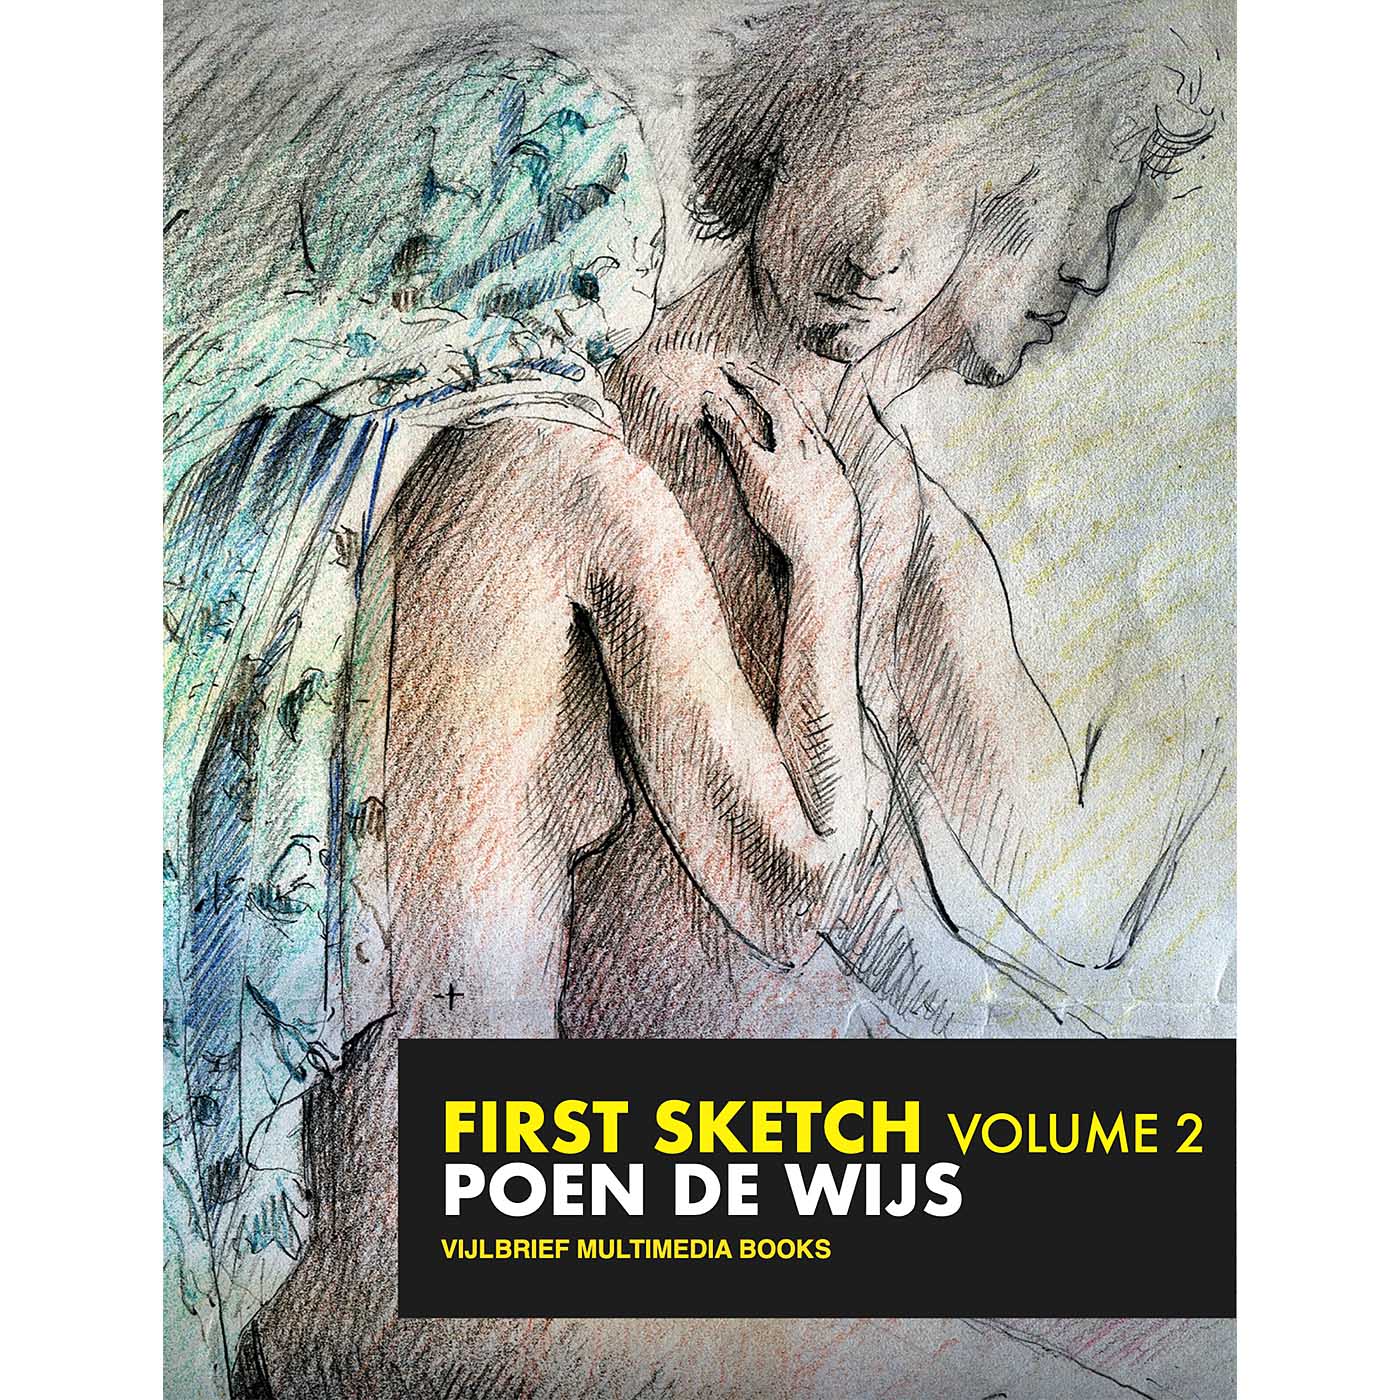 First Sketch, Volume II. The evolution of Poen de Wijs art